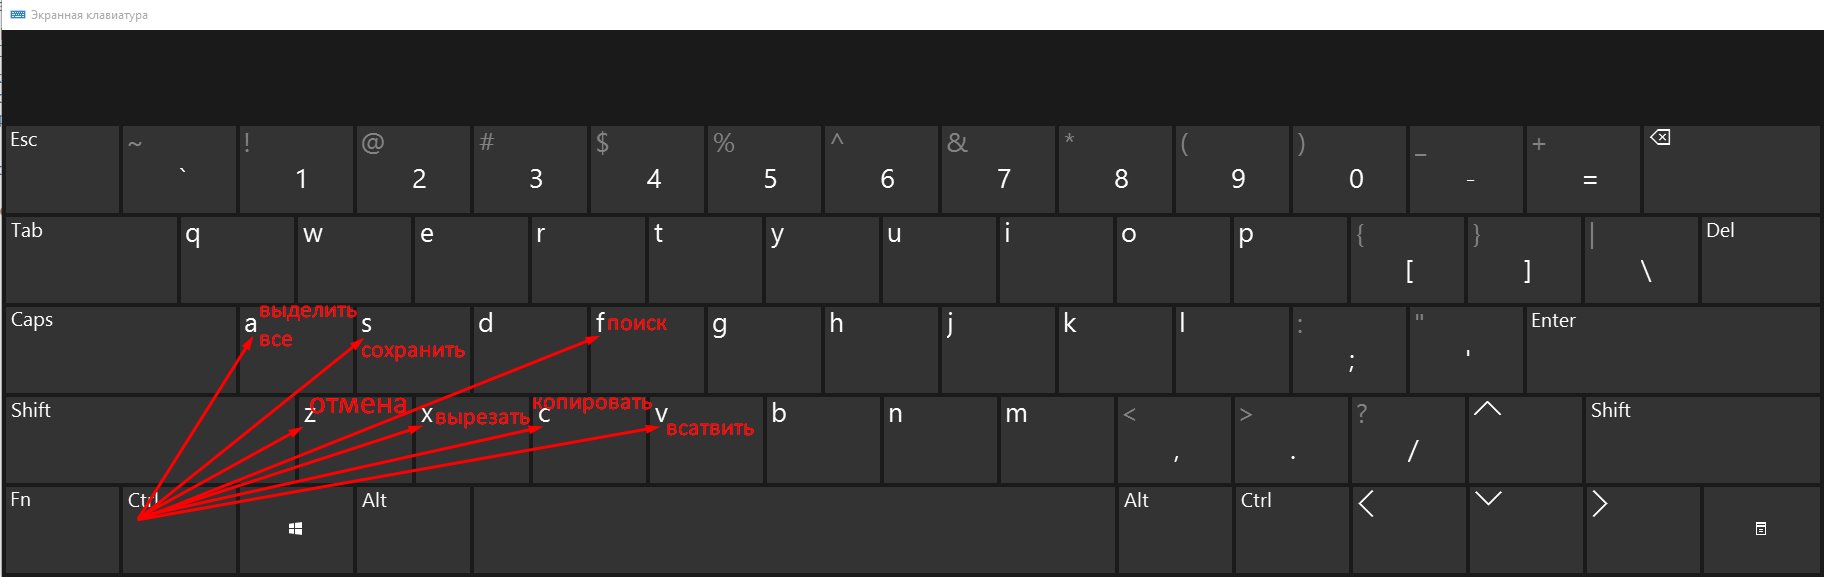 сочетания клавиш в Windows 10